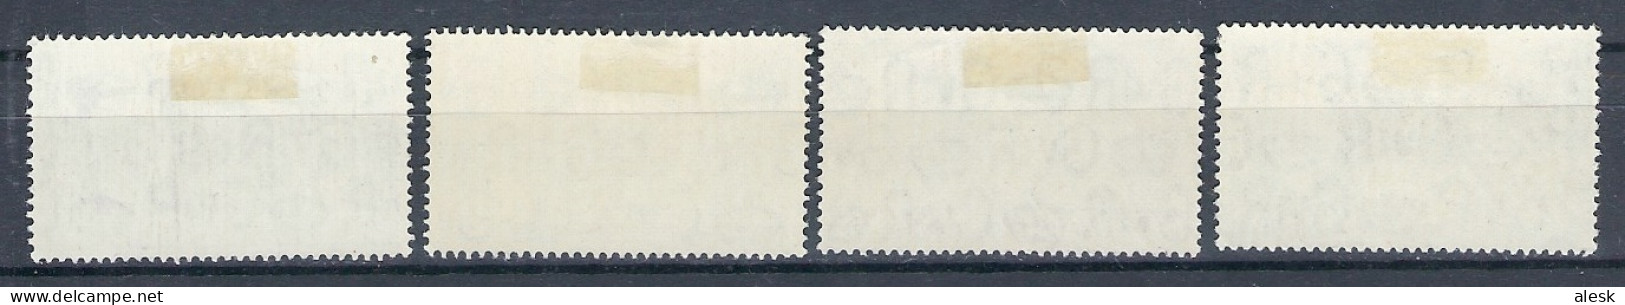 GRANDE-BRETAGNE 1948 Série N°241 / 244 Avec Charnières - Jeux Olypiques De Londres - Unused Stamps